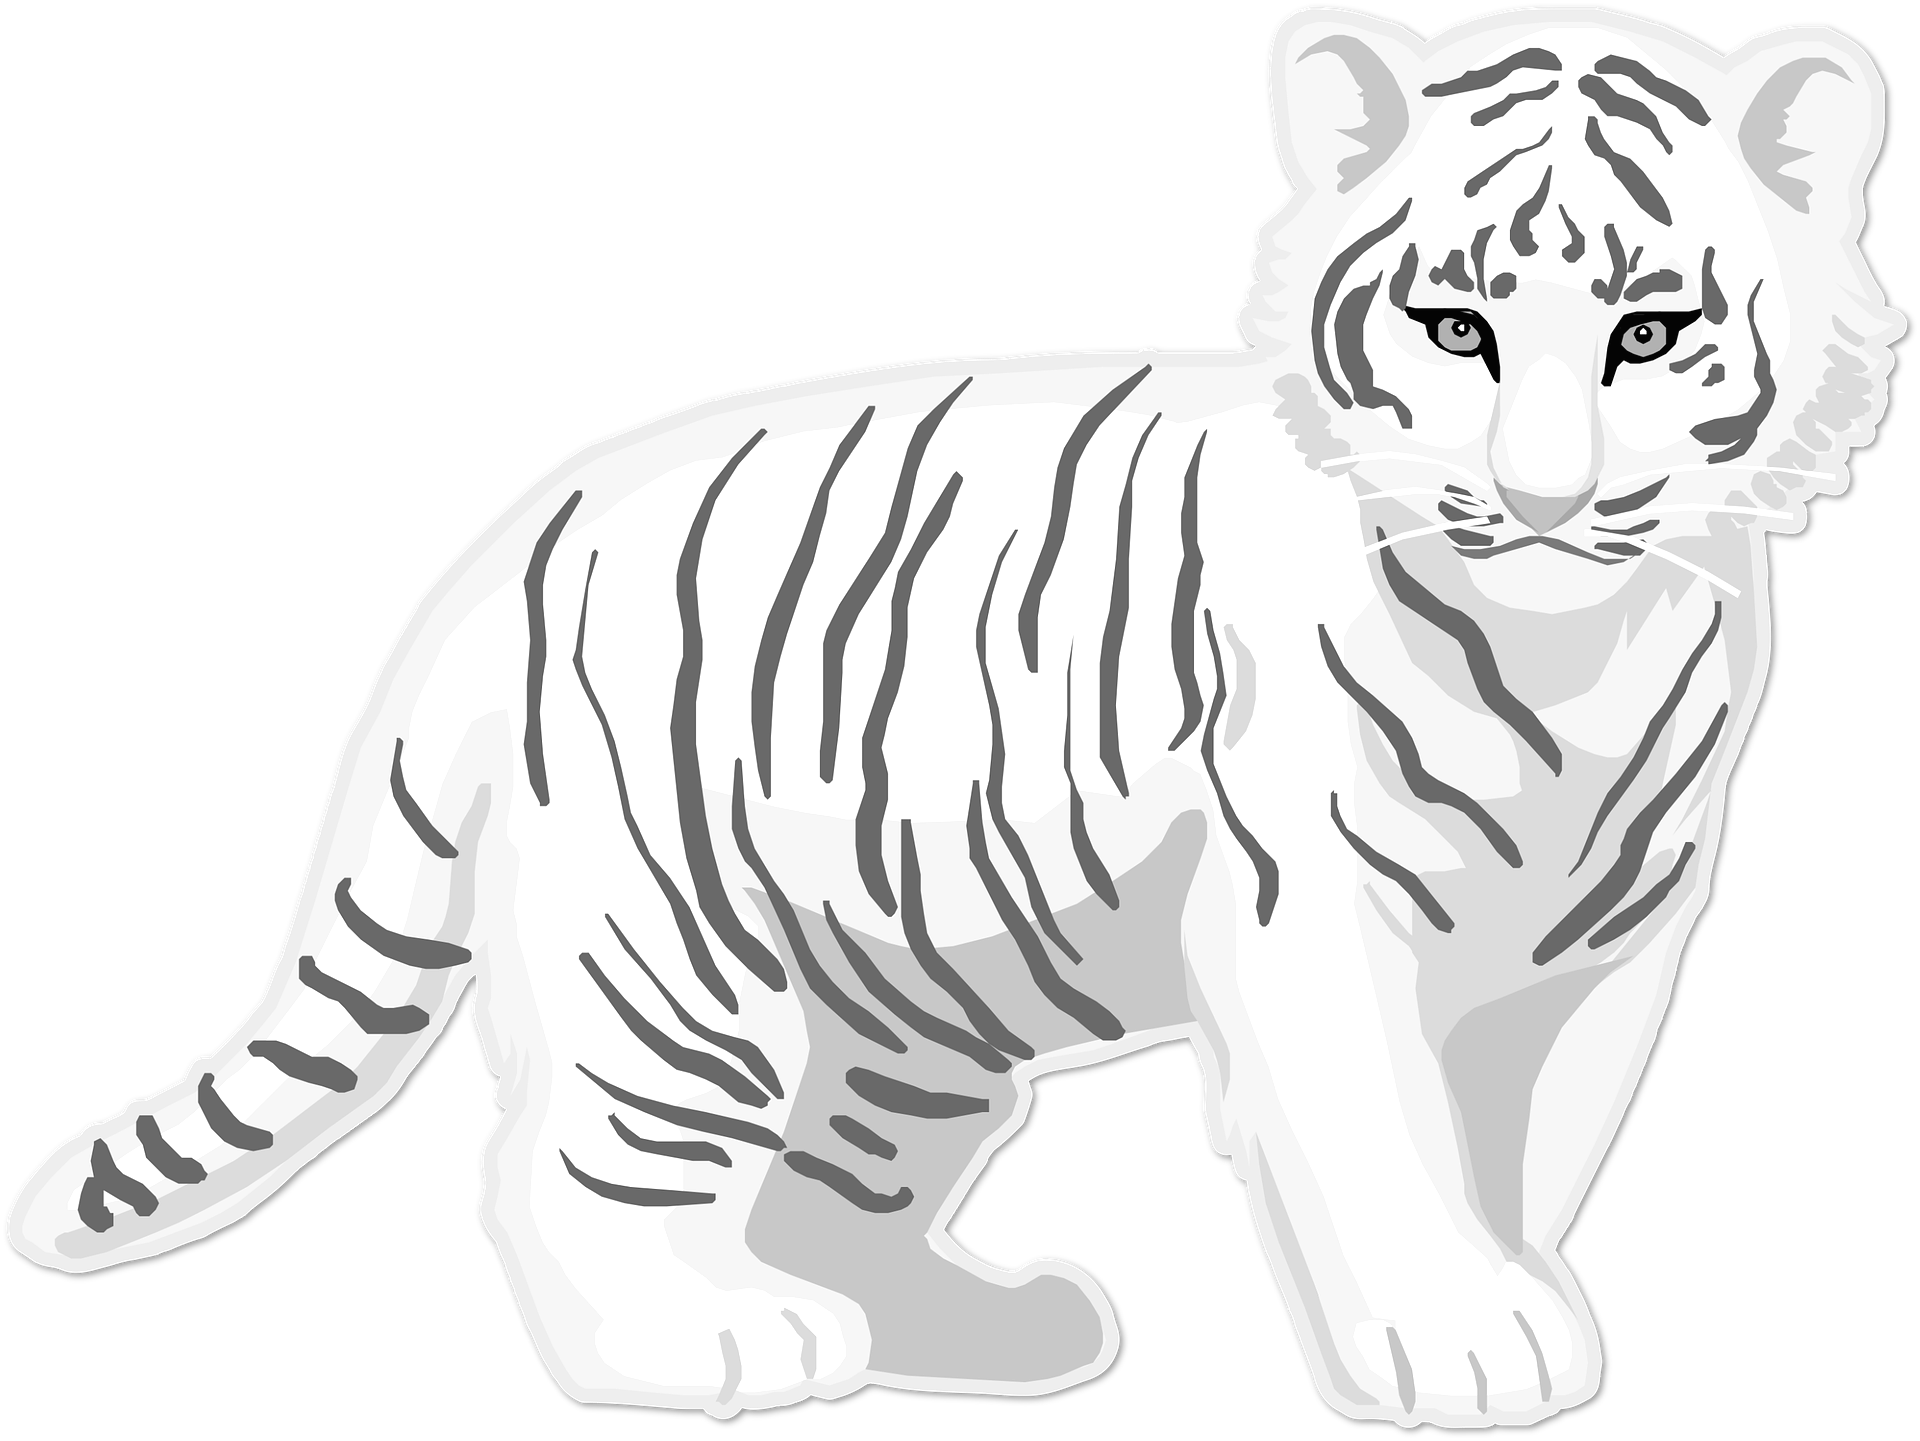 Dibujo para colorear de un tigre